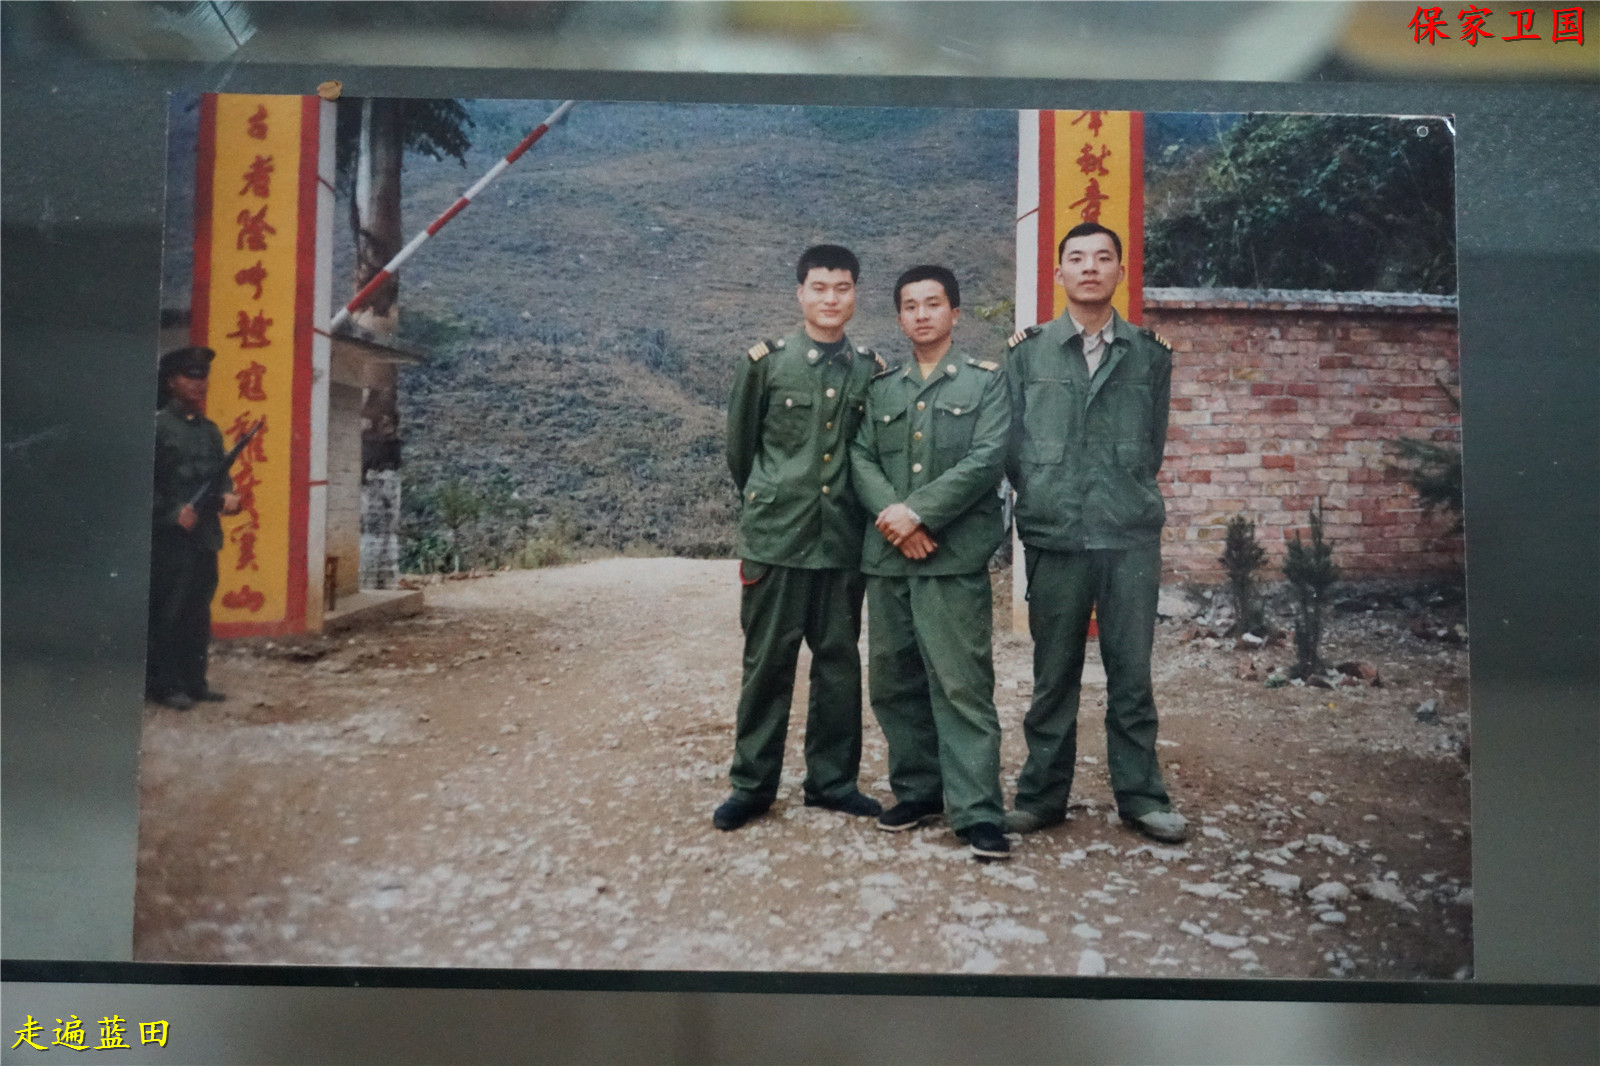 中国8023部队人员名单图片